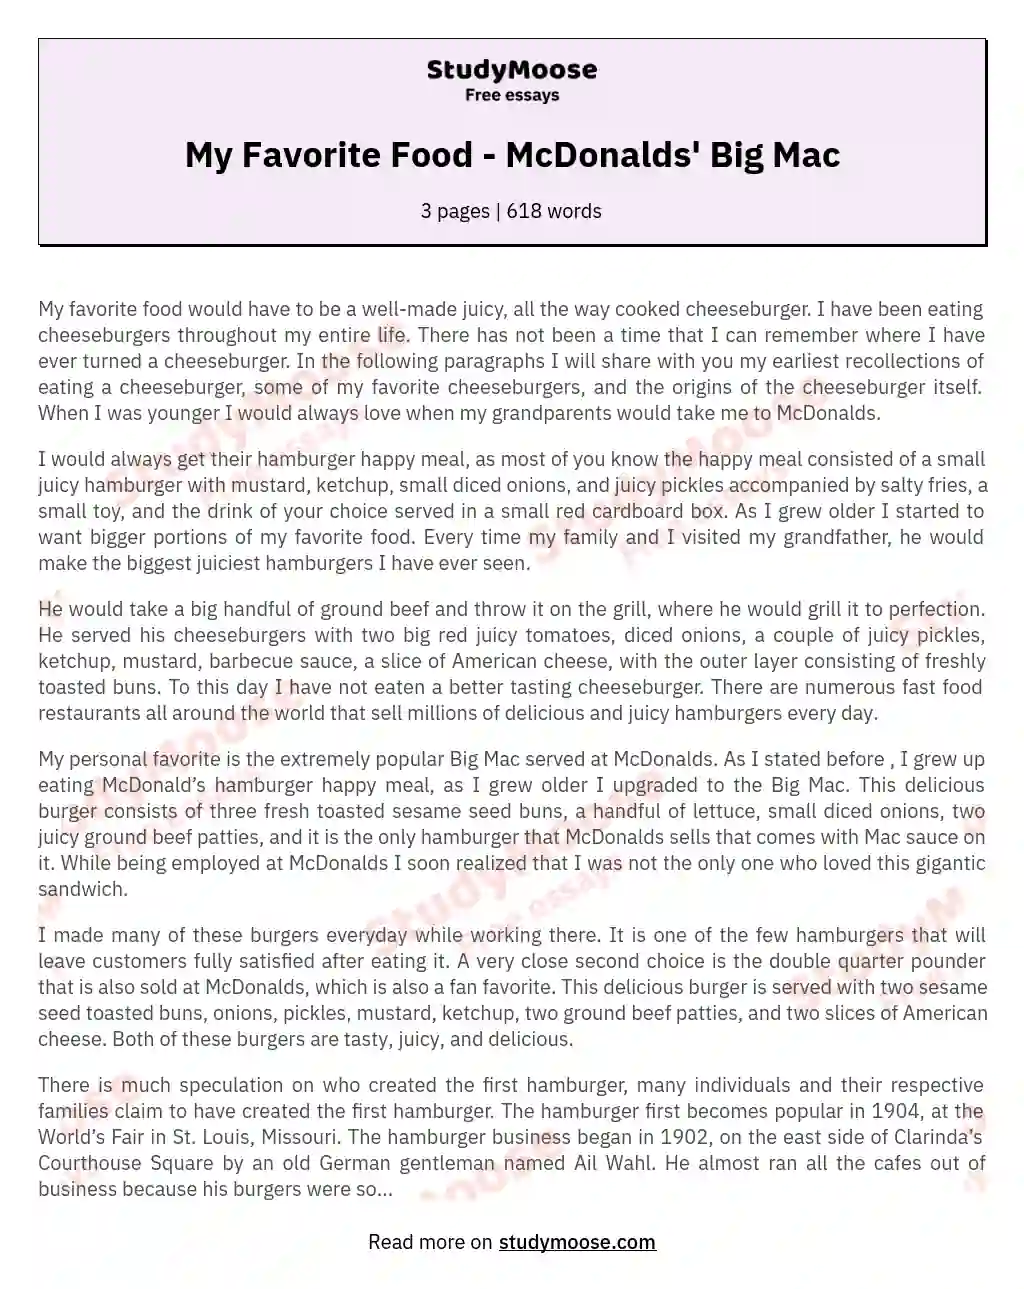 My Favorite Food - McDonalds' Big Mac